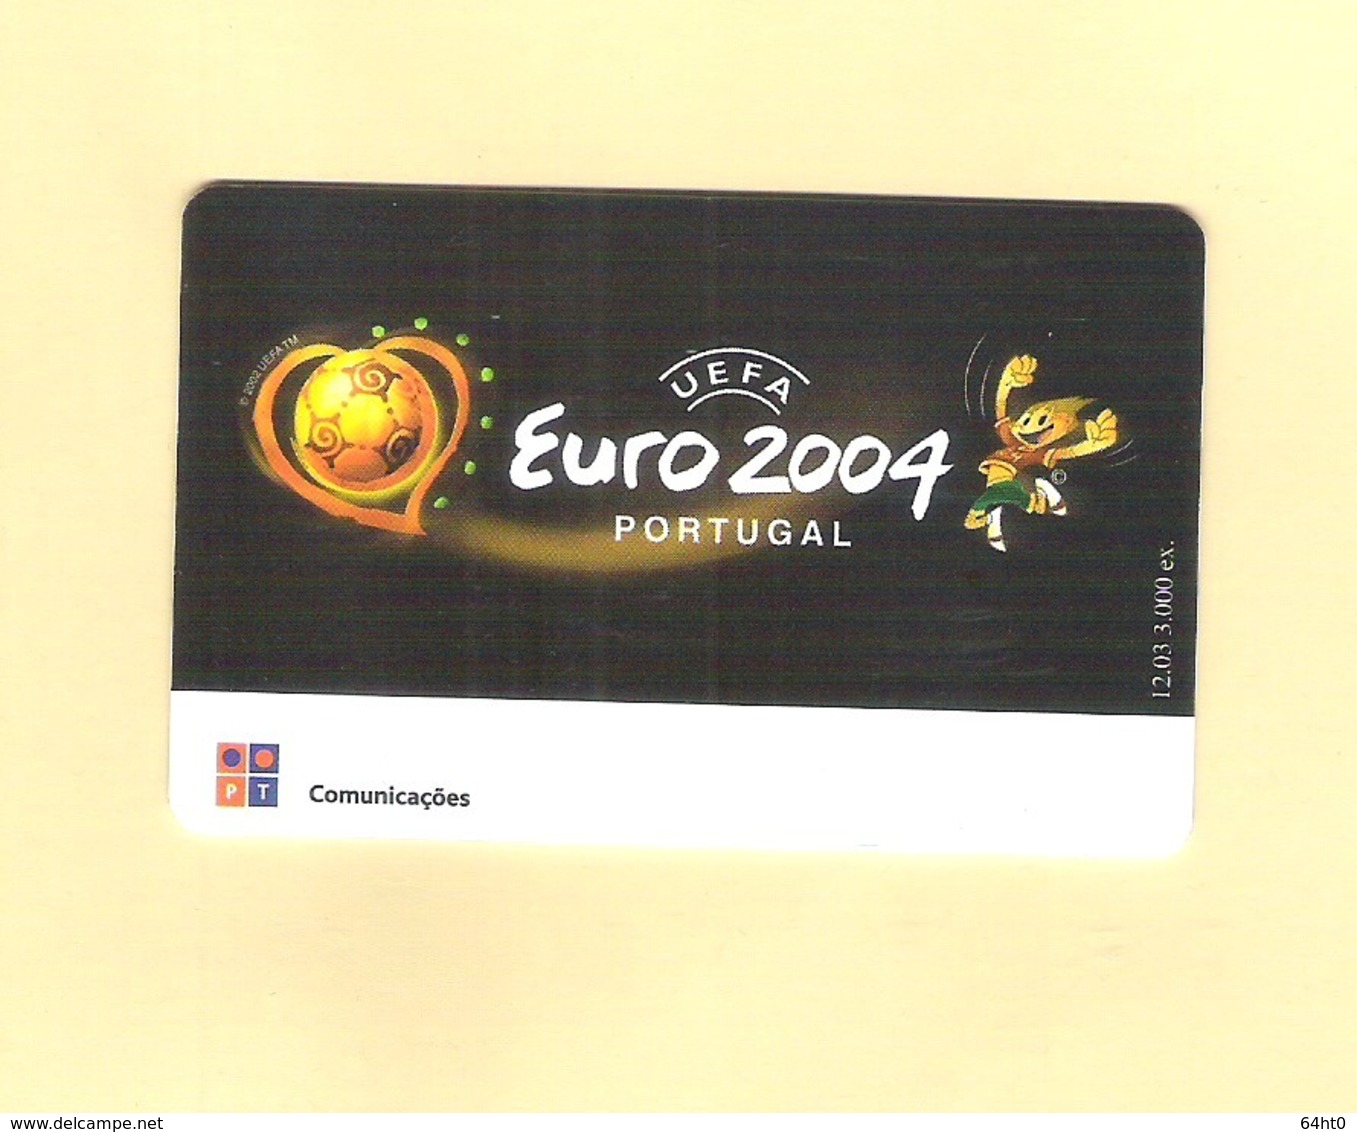 PHONECARD PORTUGAL SERIE EURO 2004 "ESTÁDIO DO DRAGÃO PORTO" PT438 EX: 3.000 - USED - Portugal